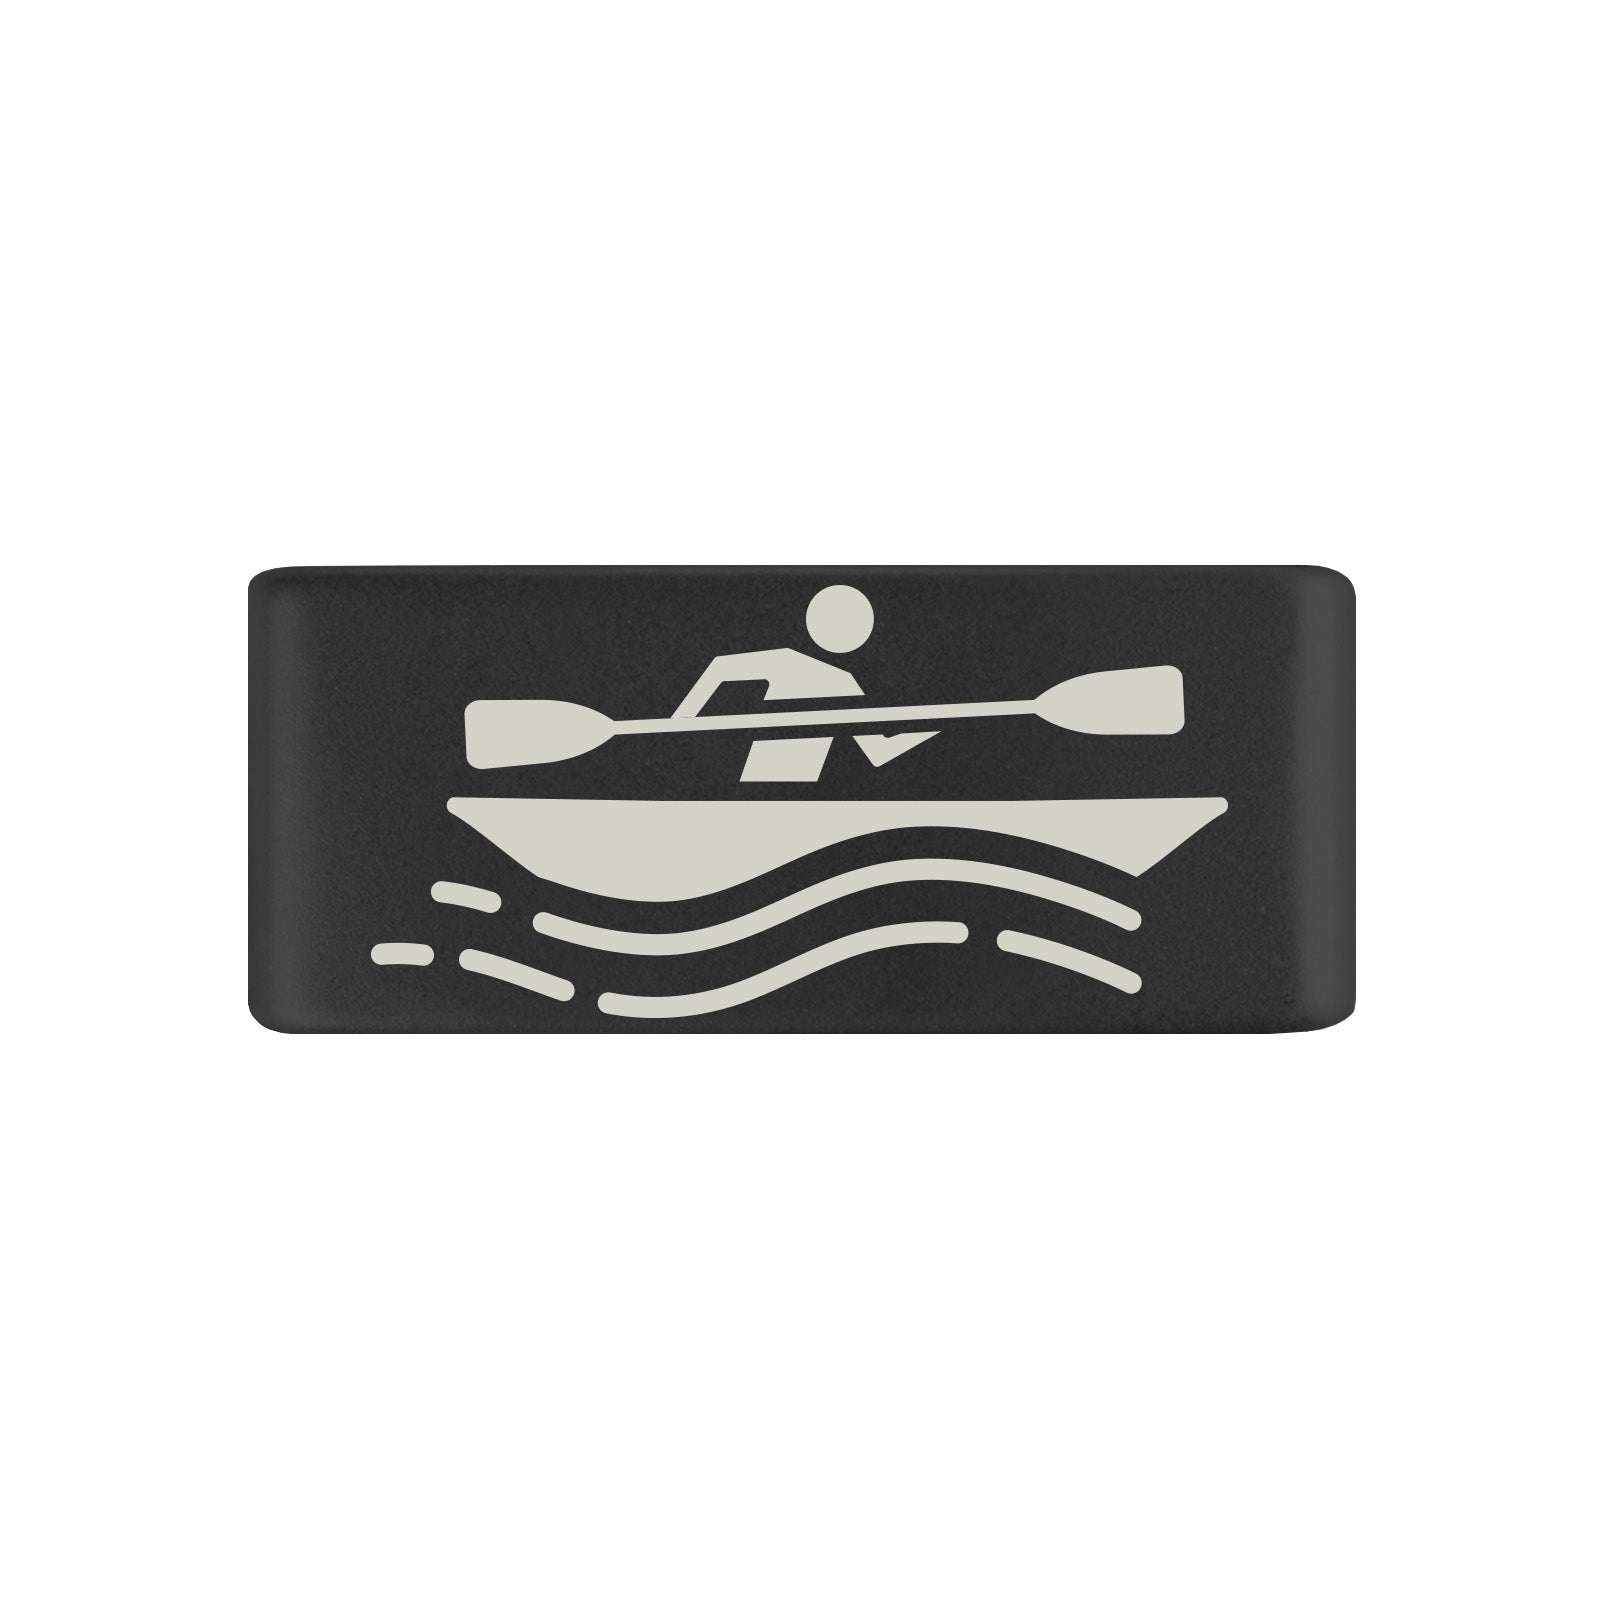 Kayak Badge Badge 13mm - ROAD iD